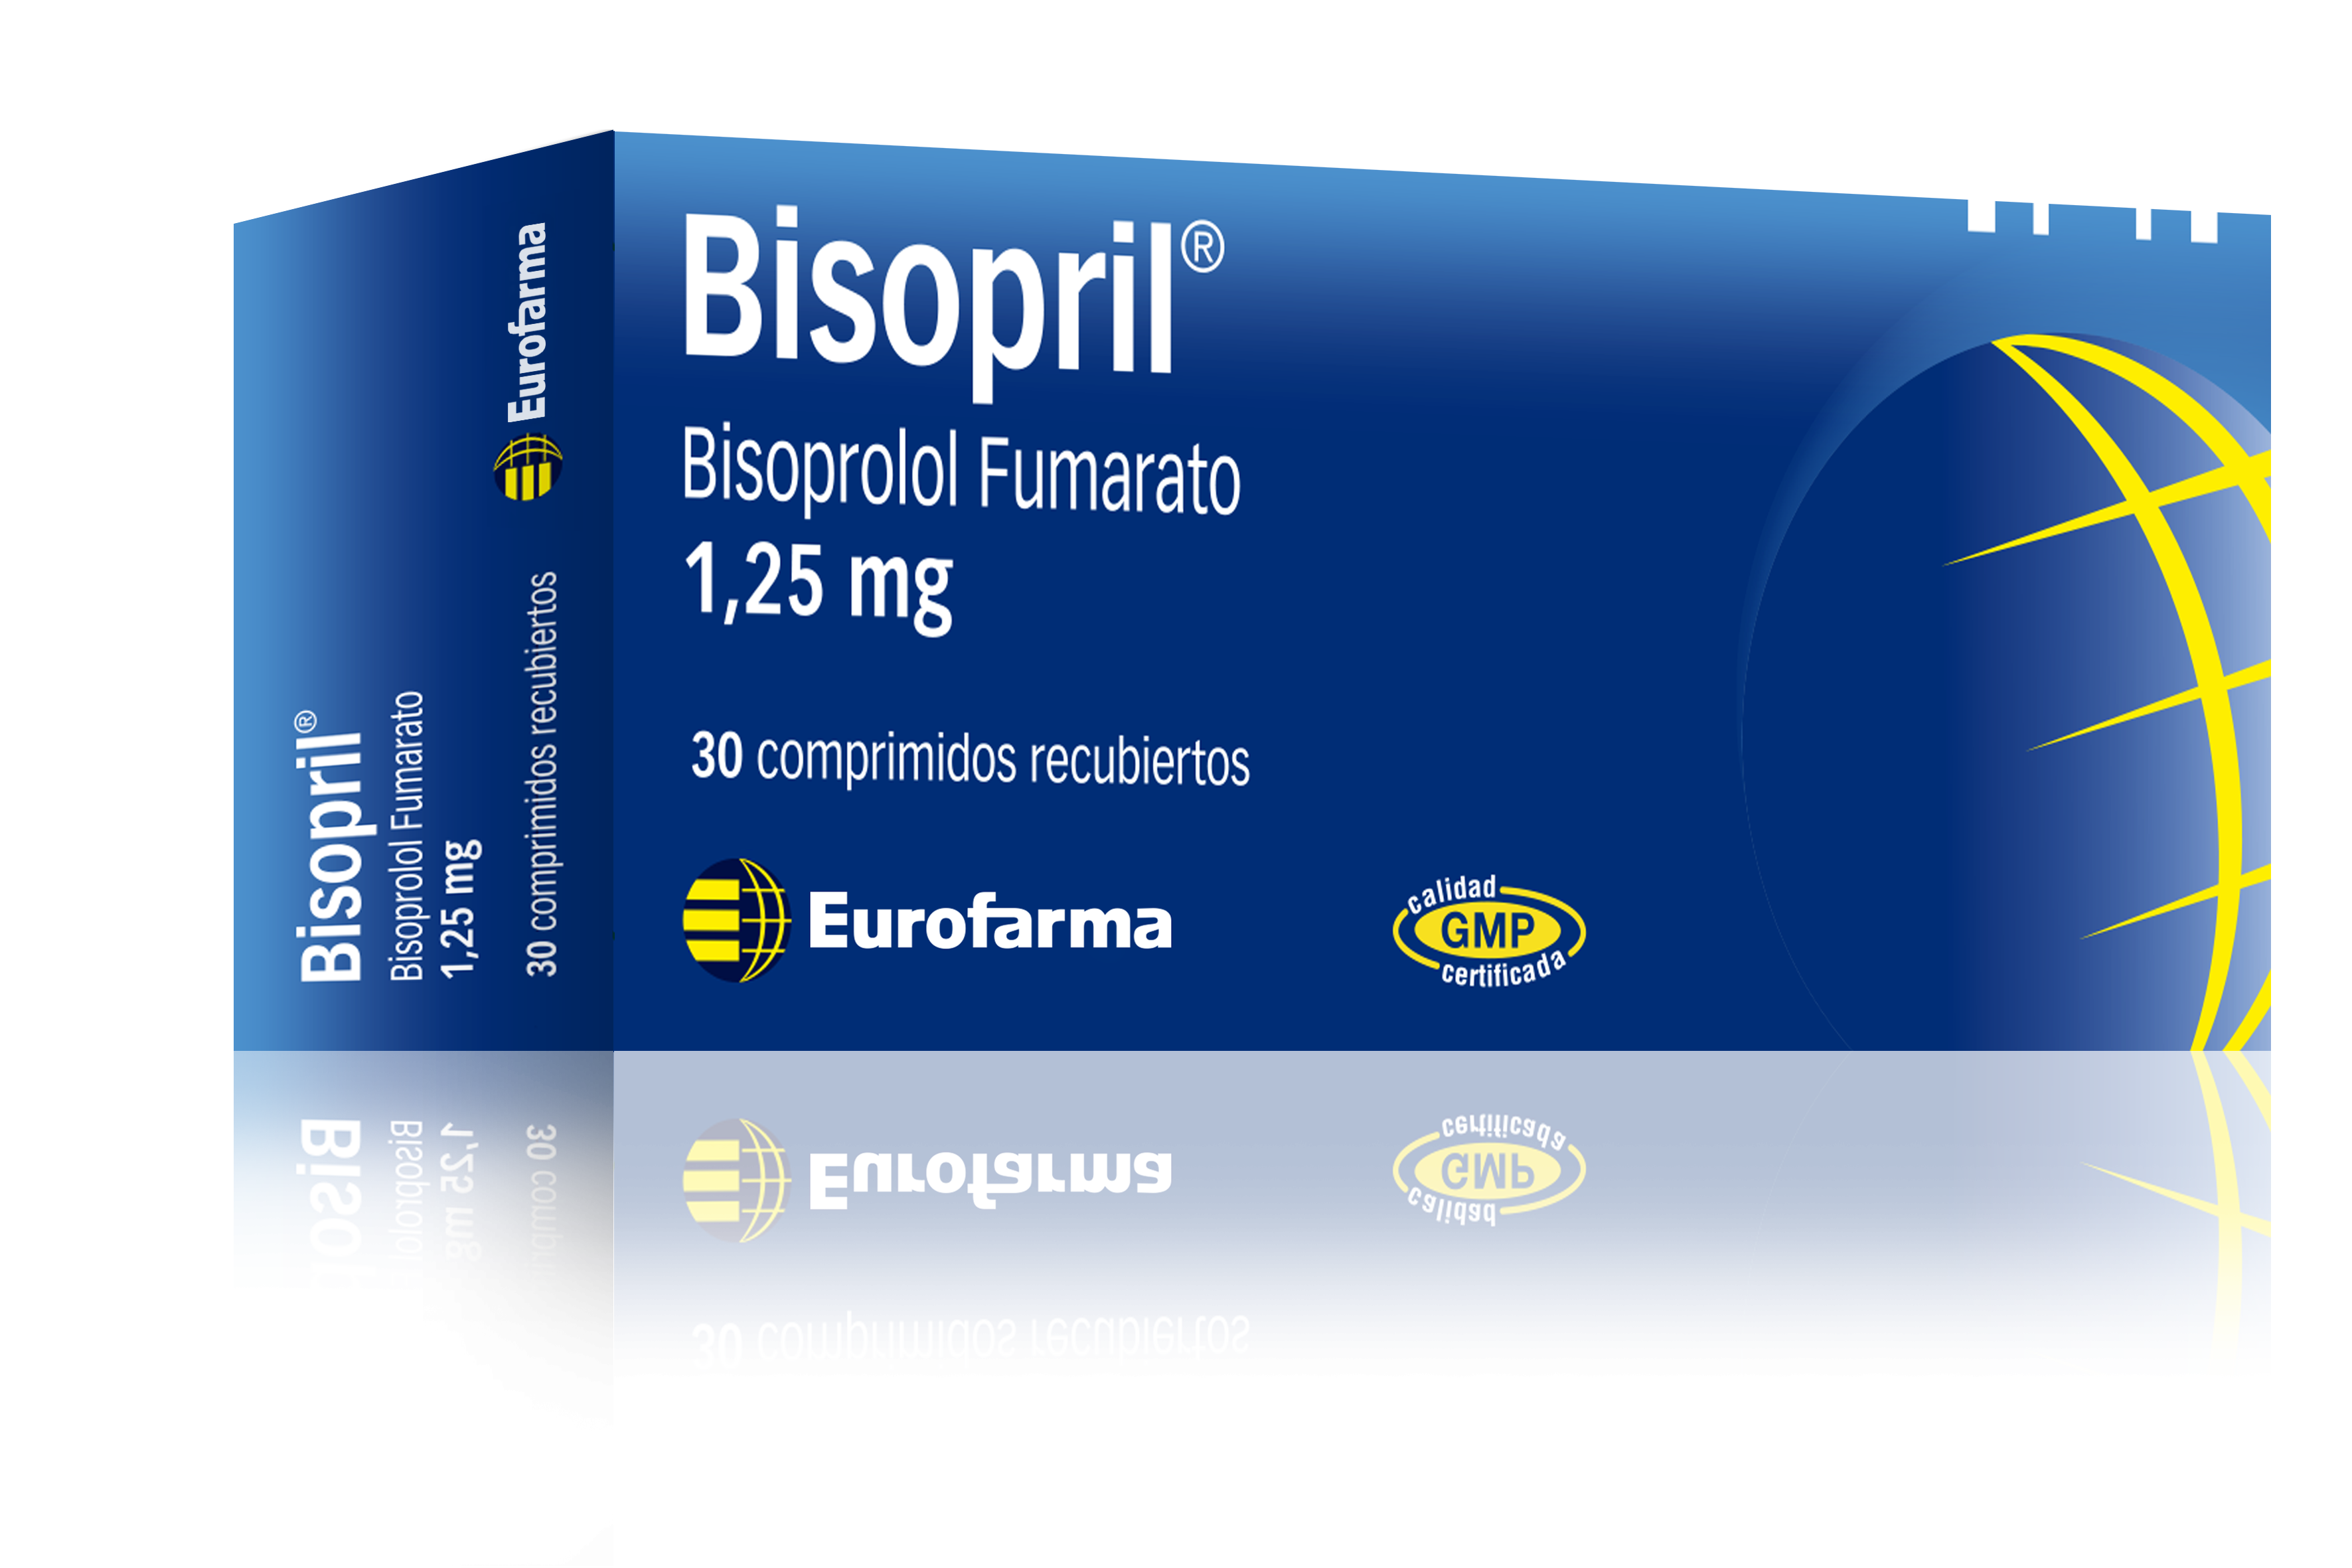 Bisopril 1,25 mg